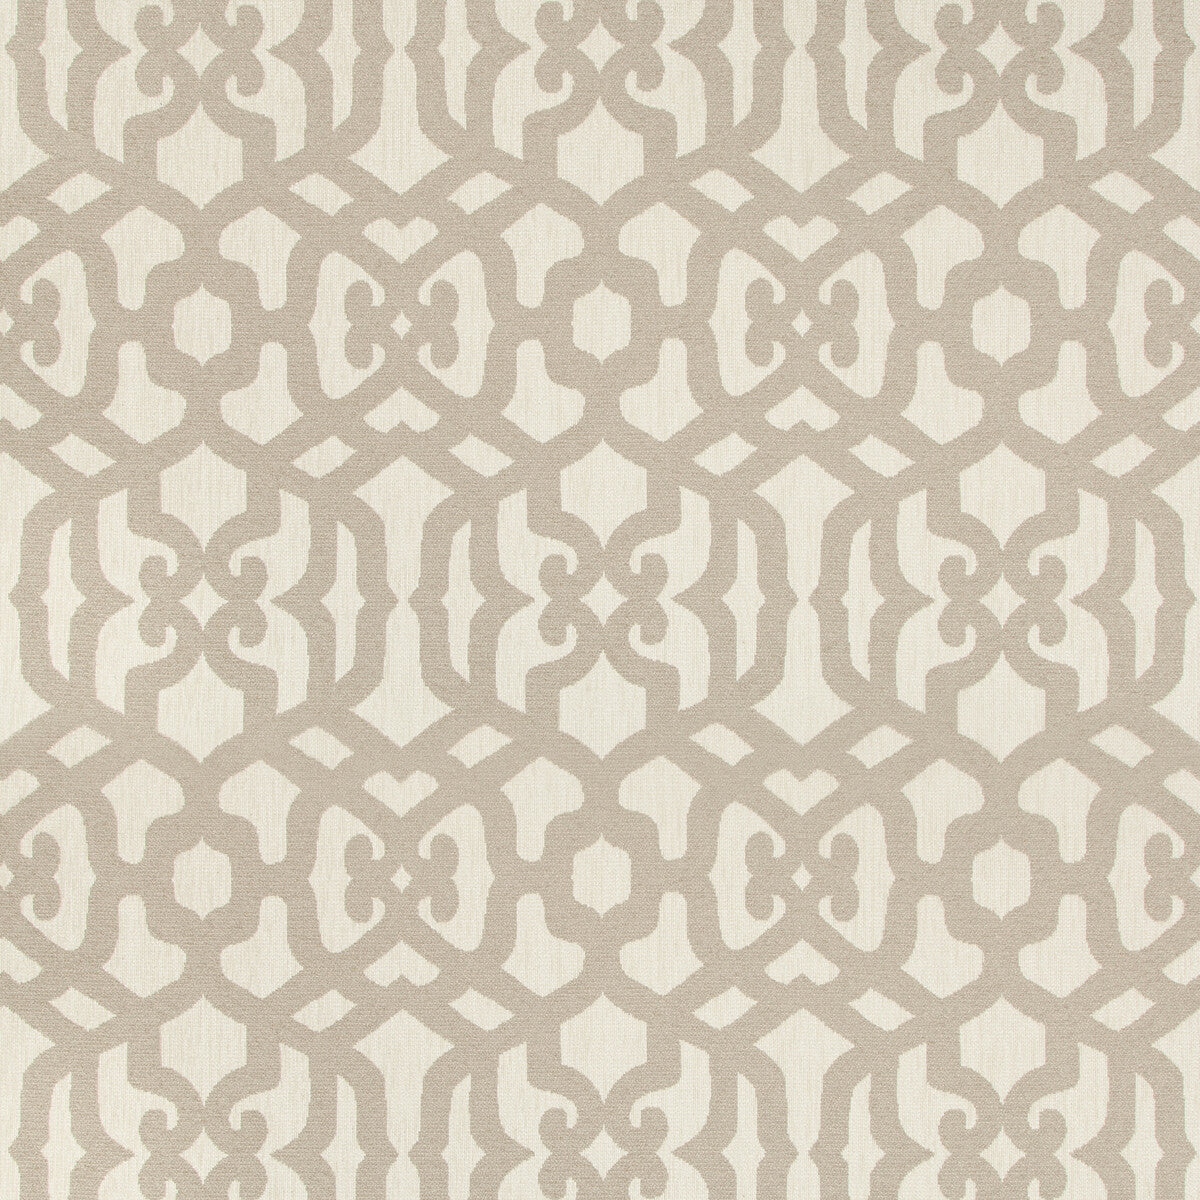 Kravet Design fabric in 35731-106 color - pattern 35731.106.0 - by Kravet Design